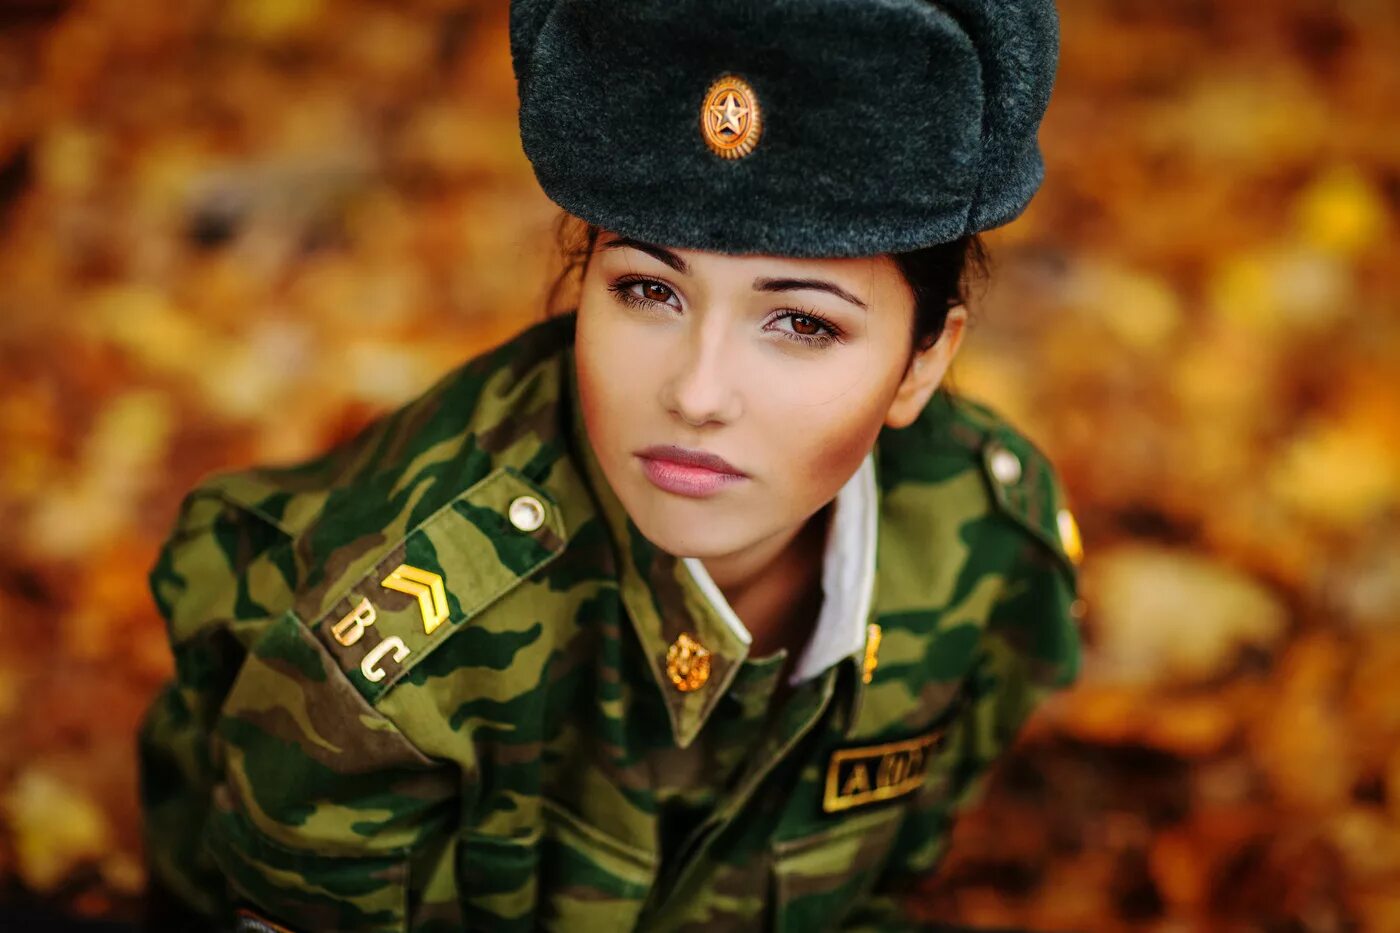 Ждем защитника отечества. 23 Февраля защитницы Отечества женщины. Девушки в военной форме. Поздравления с 23 февраля женщинам.